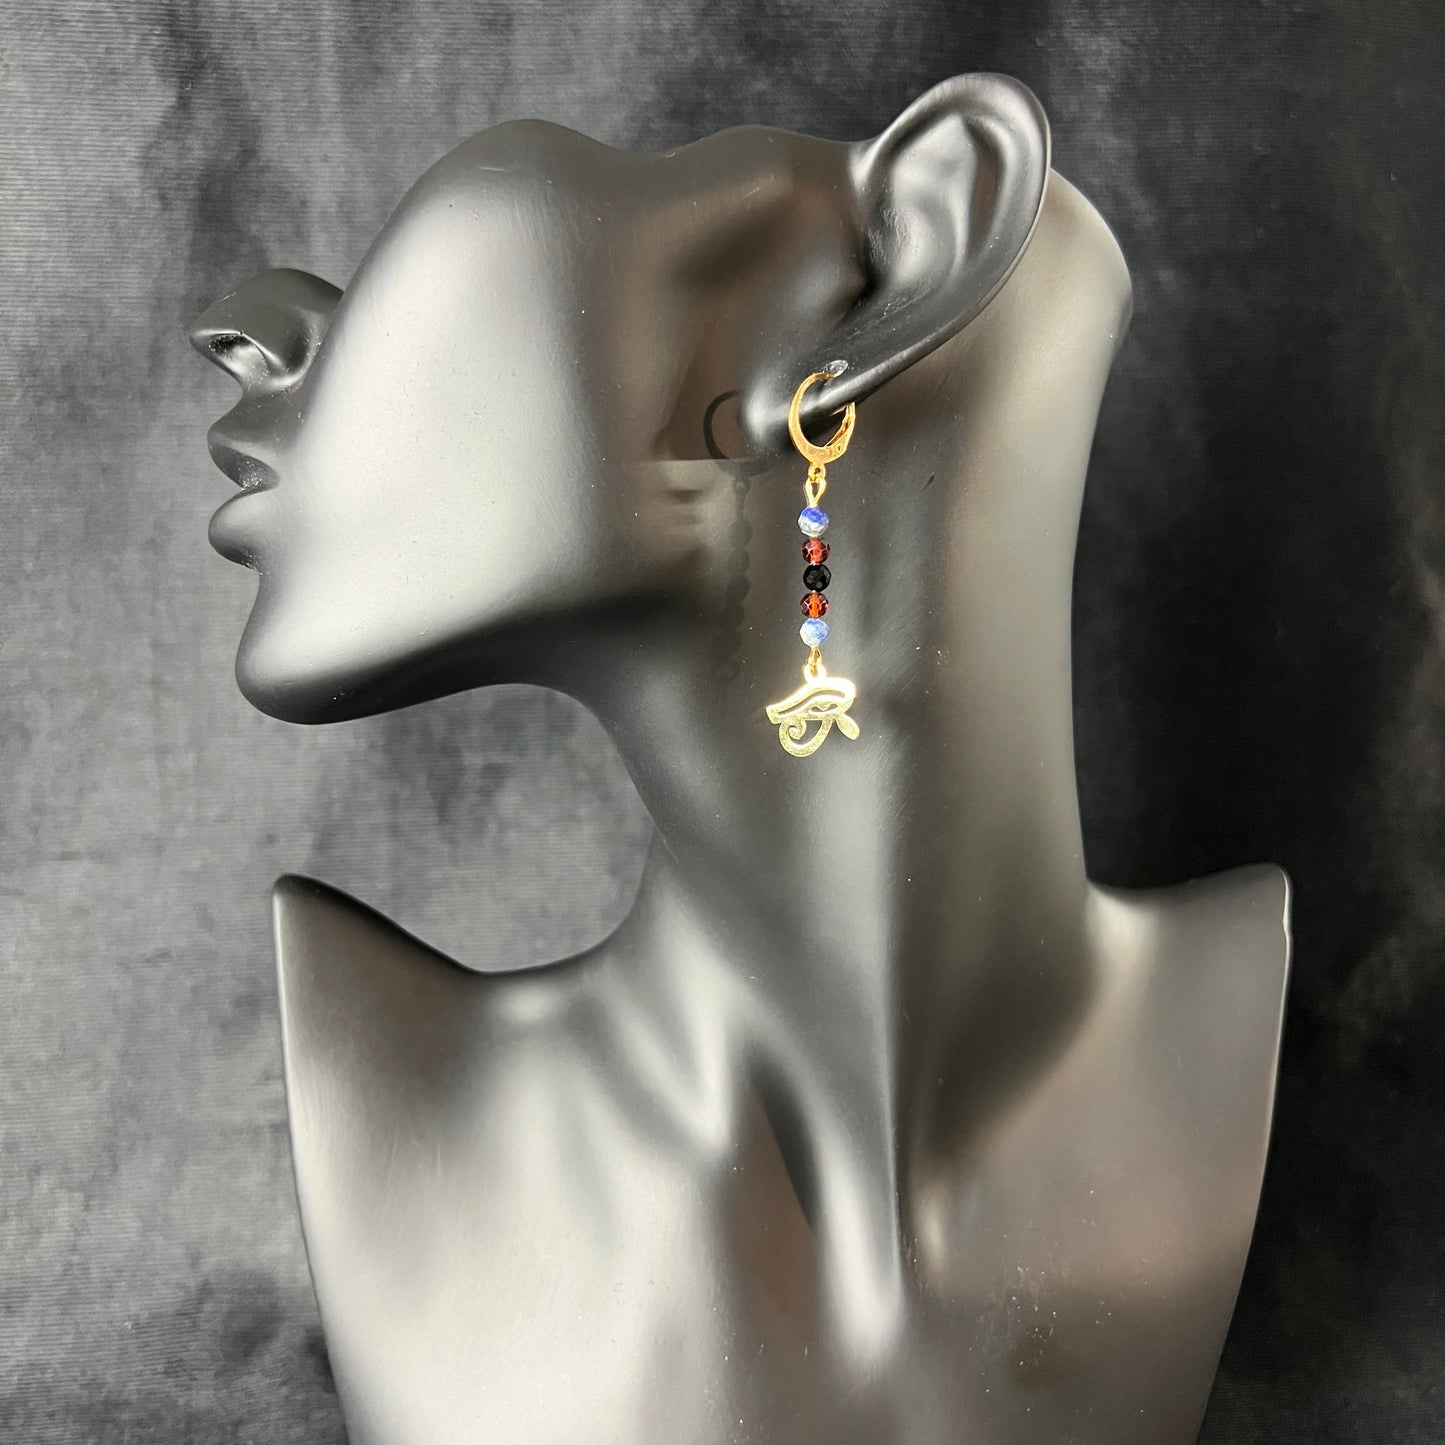 Eye of Horus earrings, golden stainless steel, lapis lazuli, garnet and onyx Baguette Magick